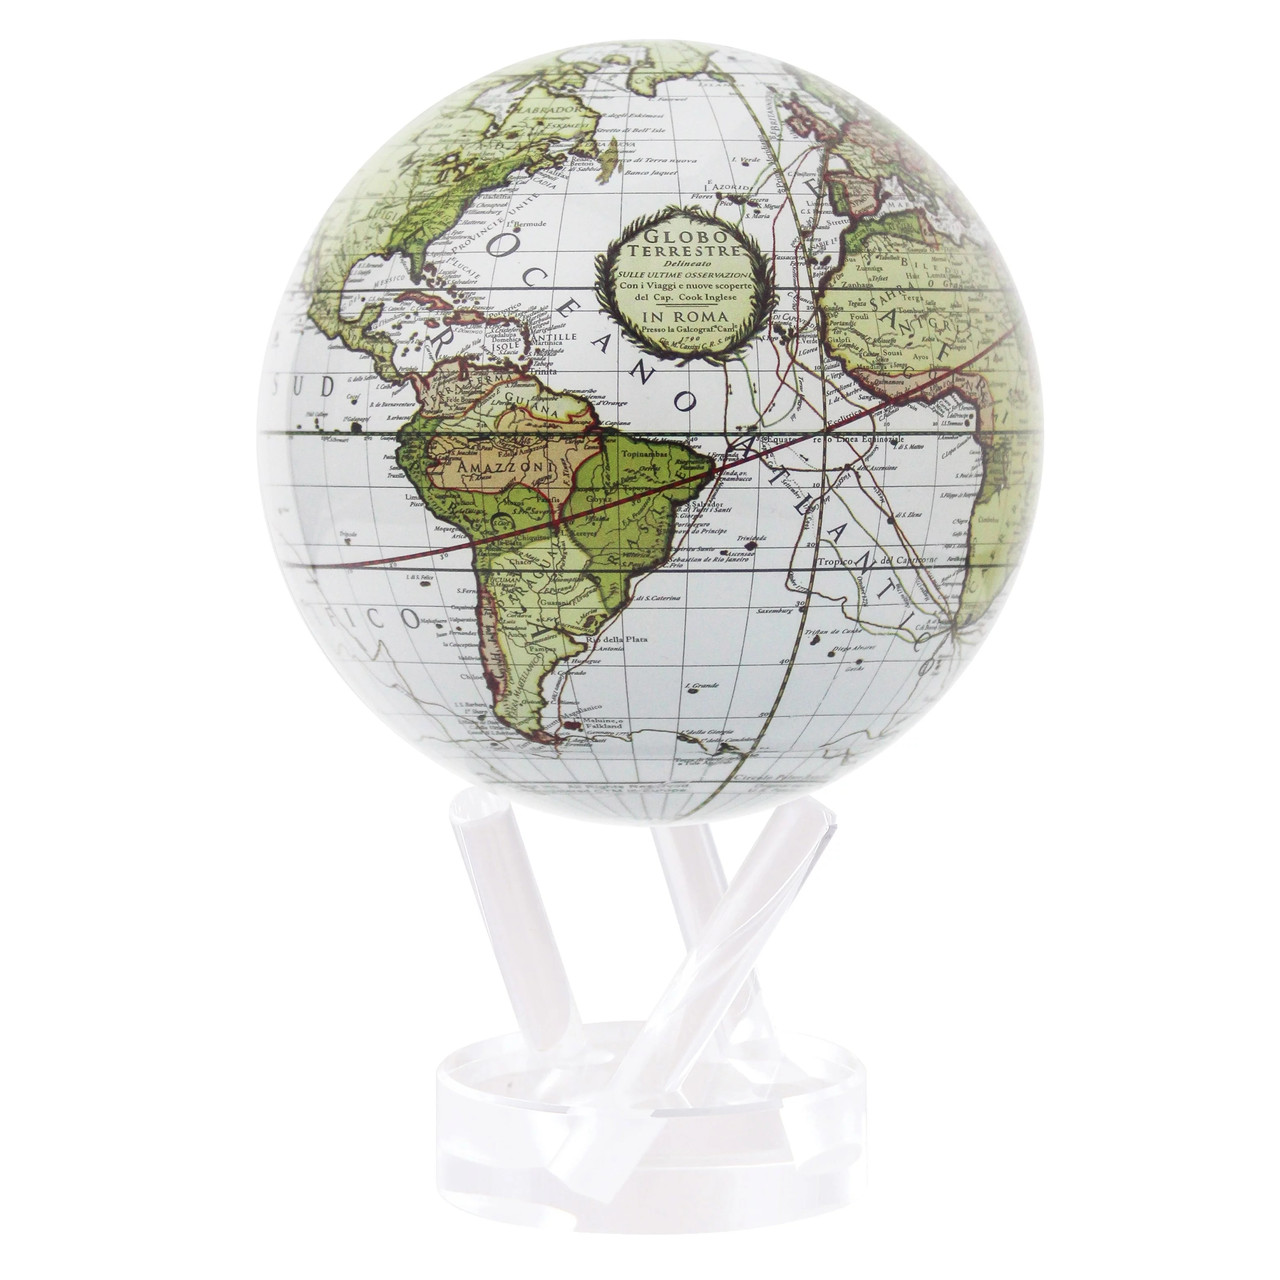 Глобус самовращающийся левітує Mova Globe "Terra Incognitta", зелений, діаметр 114 мм (США)